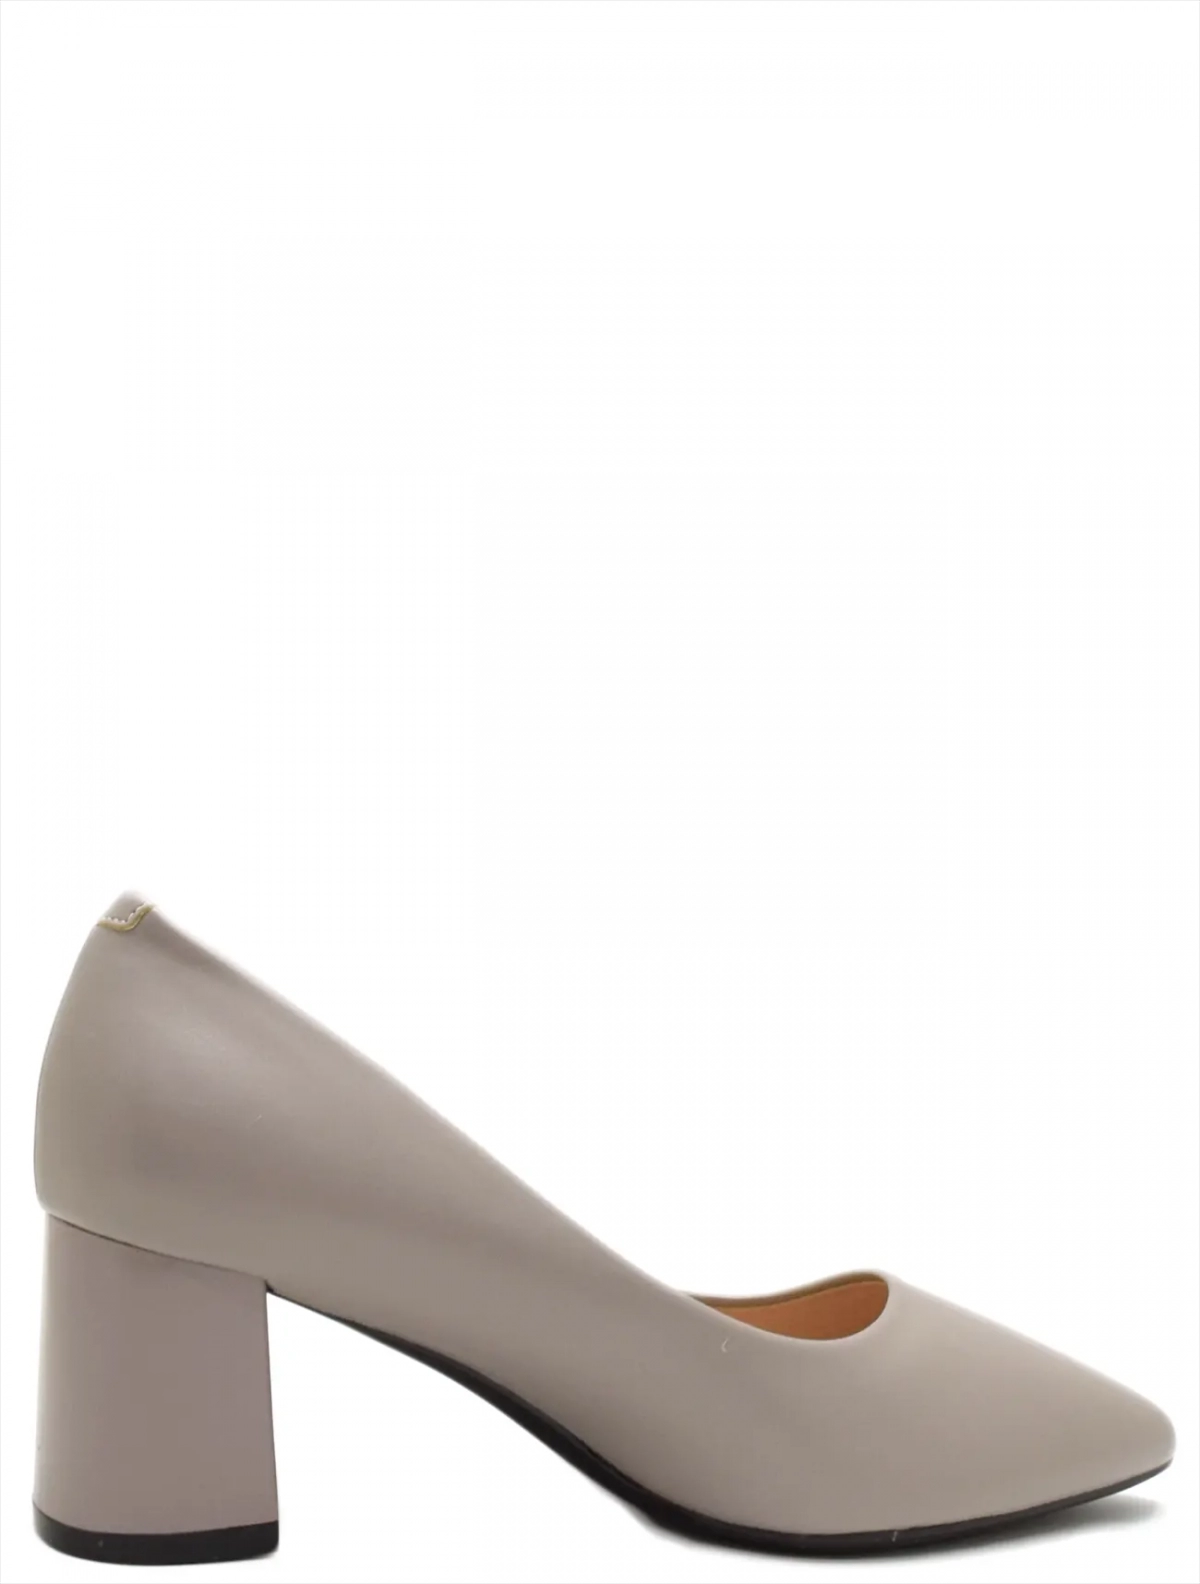 UILLIRRY FDU32-2 женские туфли